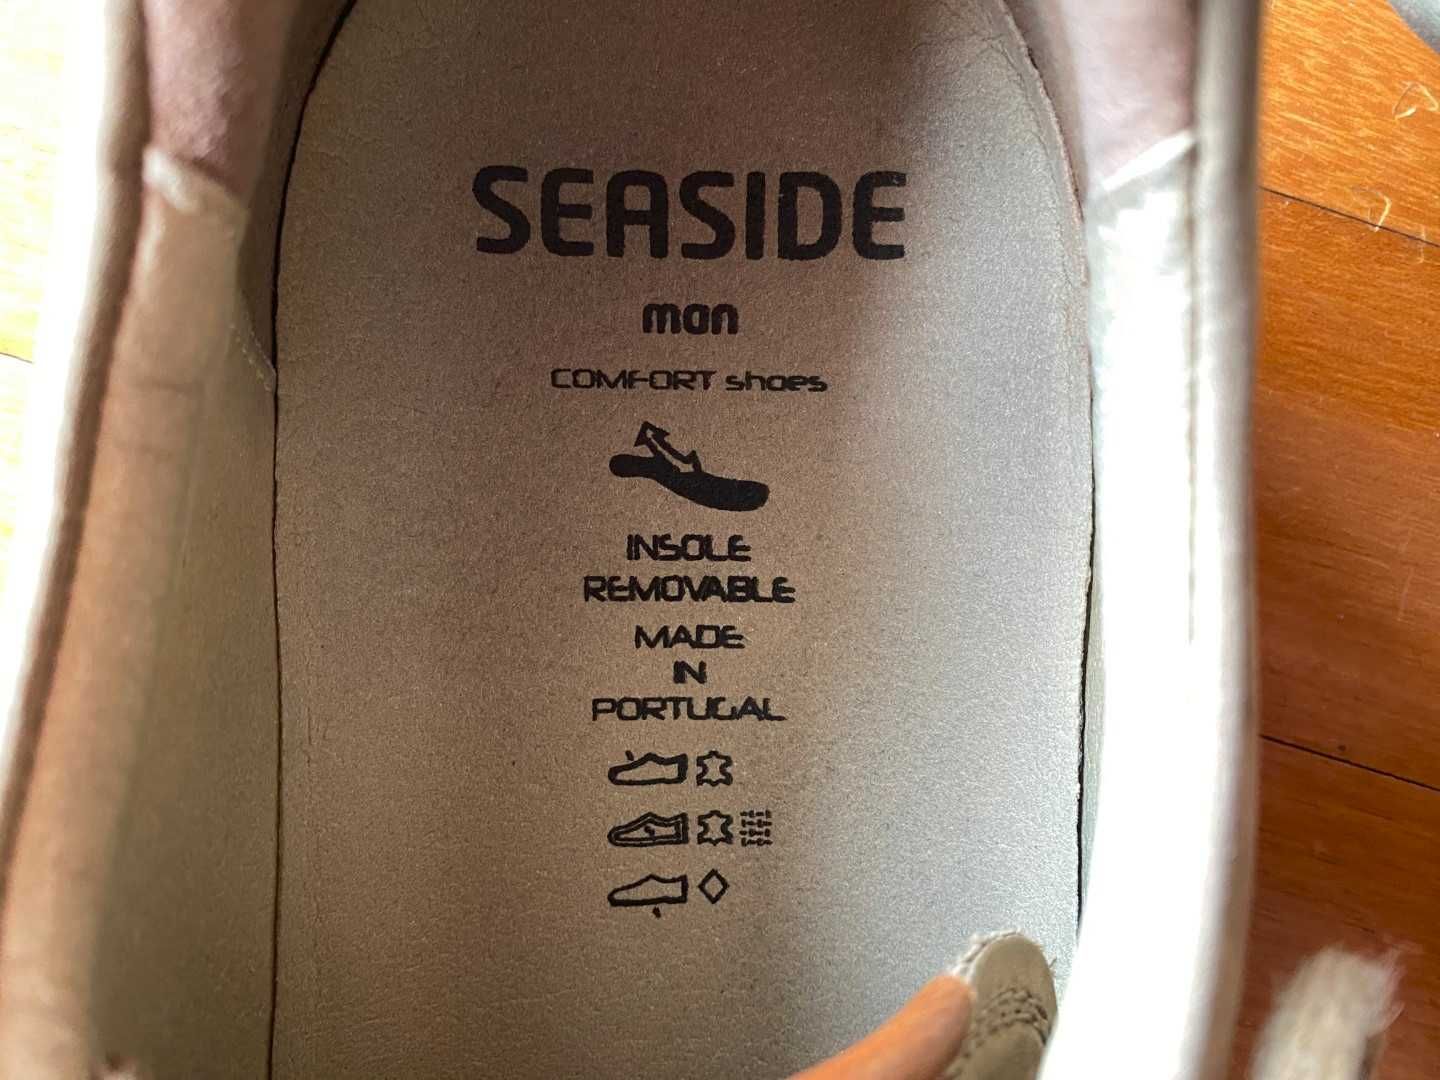 Sapato desportivo de pele e camurça (Seaside) n44